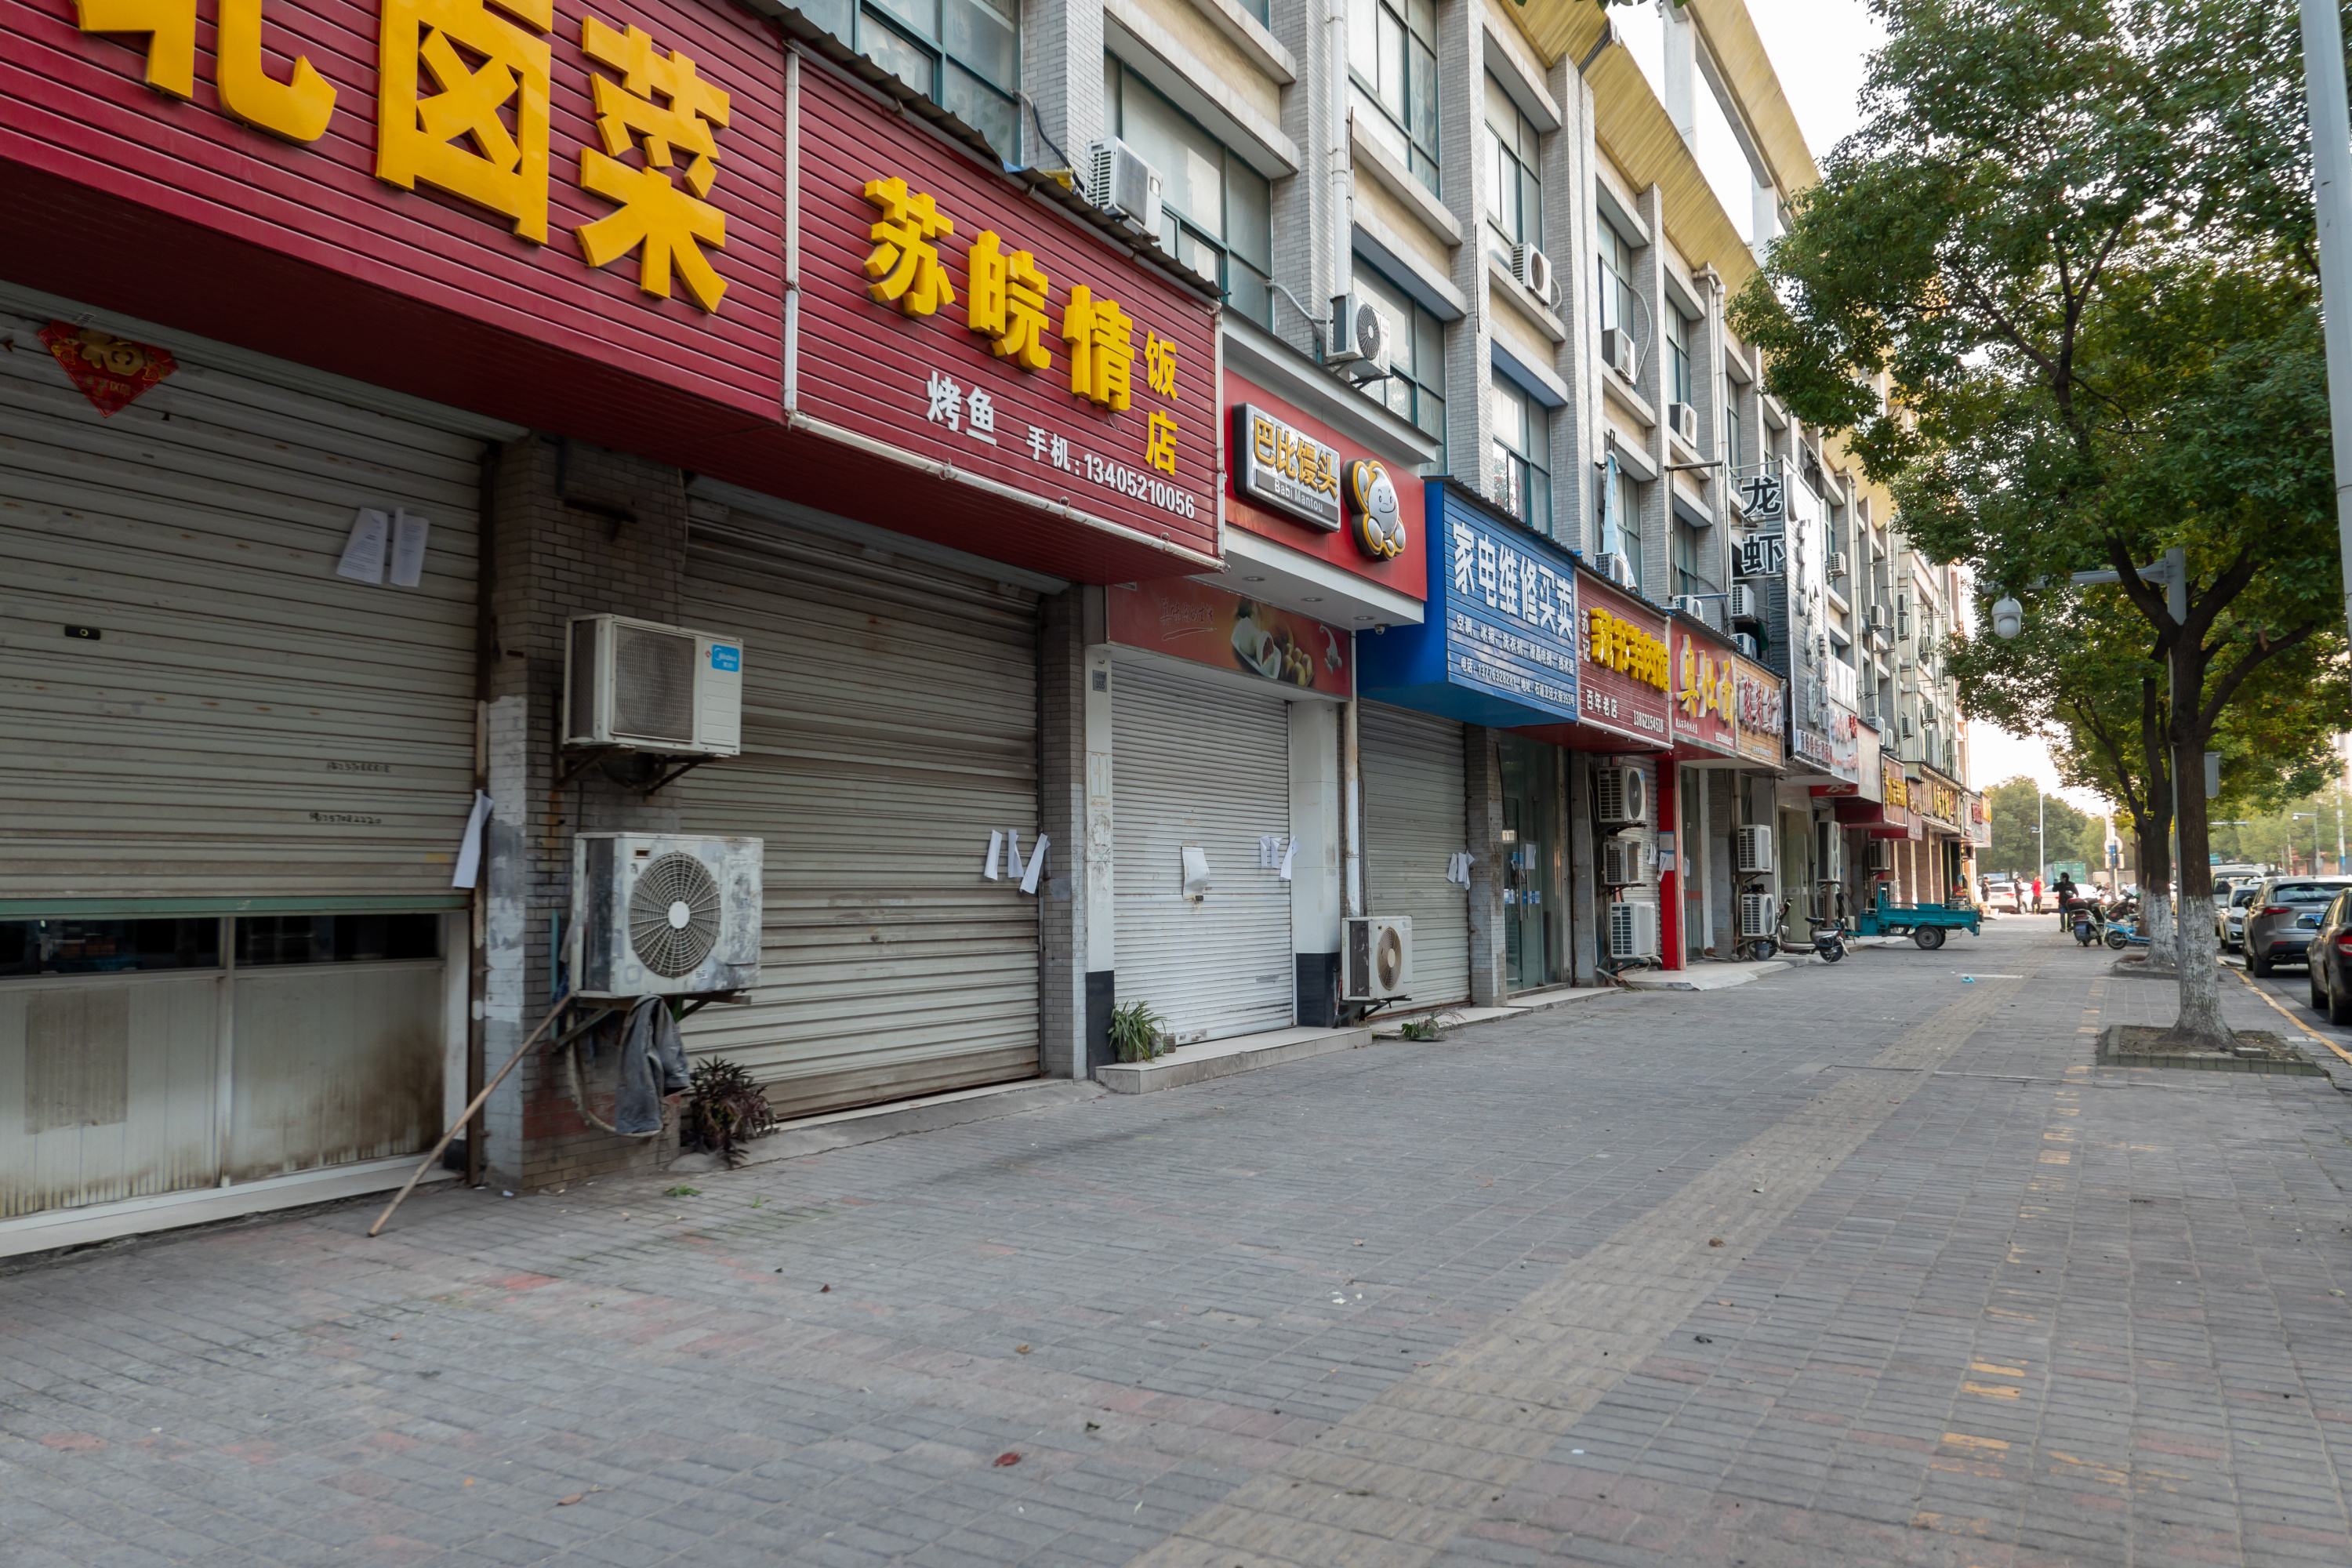 Закрытые магазины на торговой улице в китайском городе Сучжоу. Источник: tao xi/shuotterstock. 